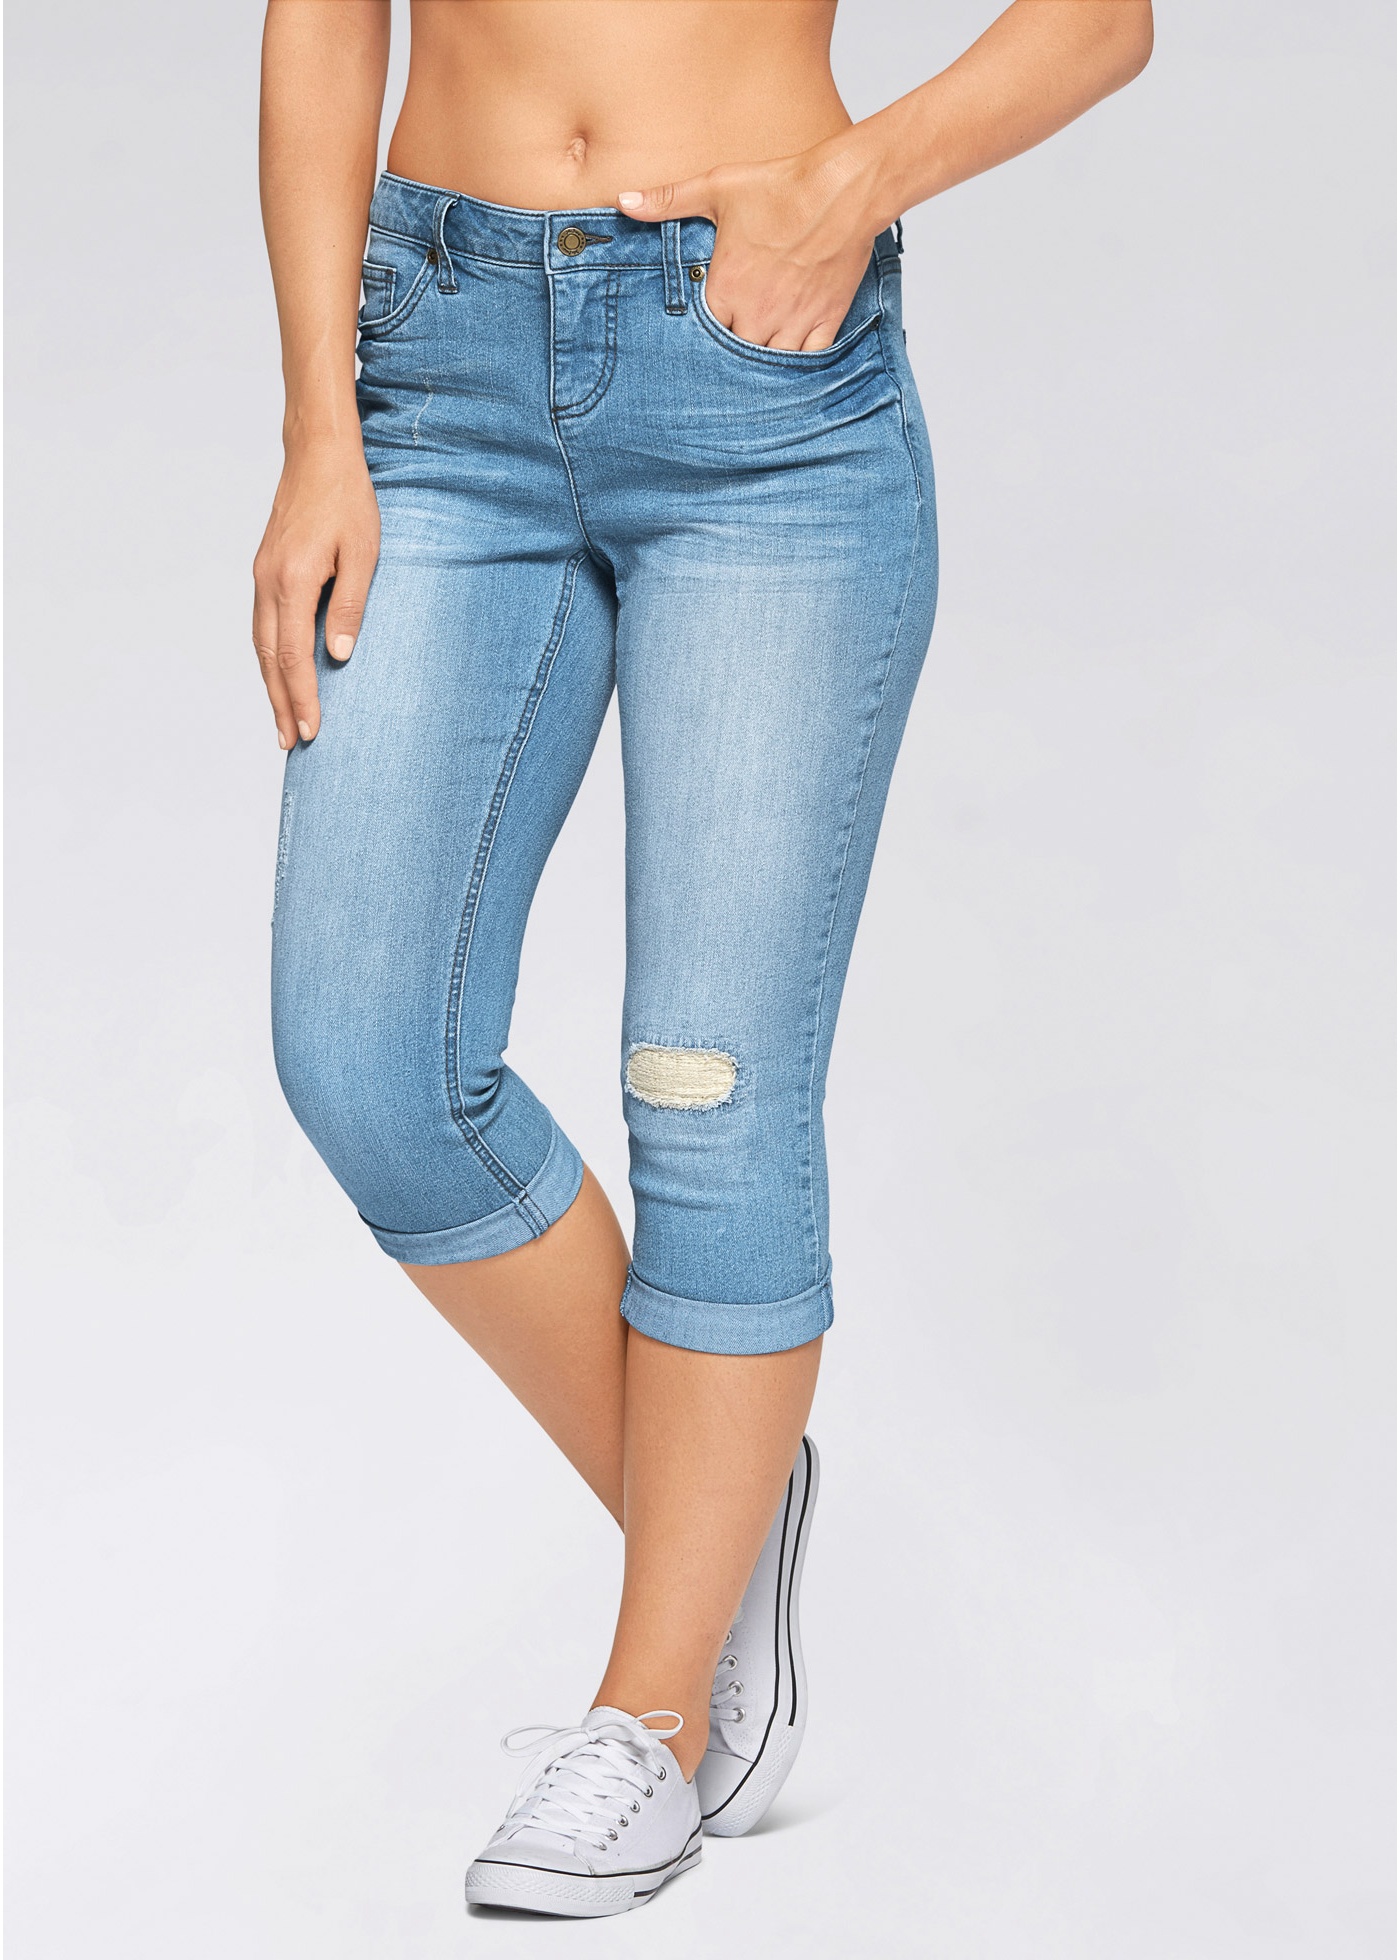 Купить бриджи джинсовые женские. Джинсовые капри женские на валберис. DKNY Jeans капри джинсовые. Валберис джинсы капри. Бриджи капри джинсовые Hollister.